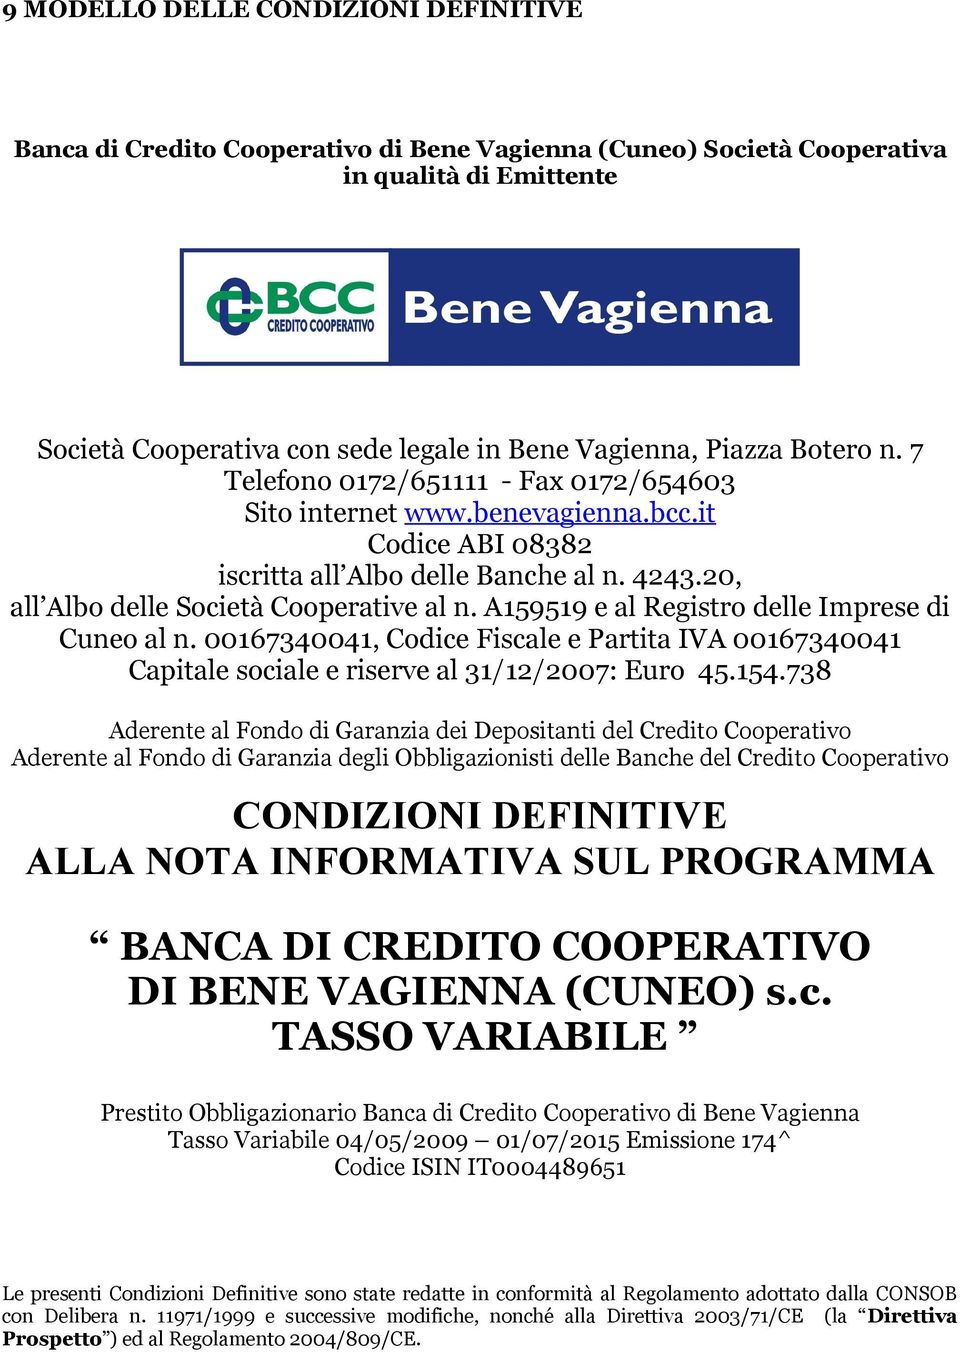 A159519 e al Registro delle Imprese di Cuneo al n. 00167340041, Codice Fiscale e Partita IVA 00167340041 Capitale sociale e riserve al 31/12/2007: Euro 45.154.